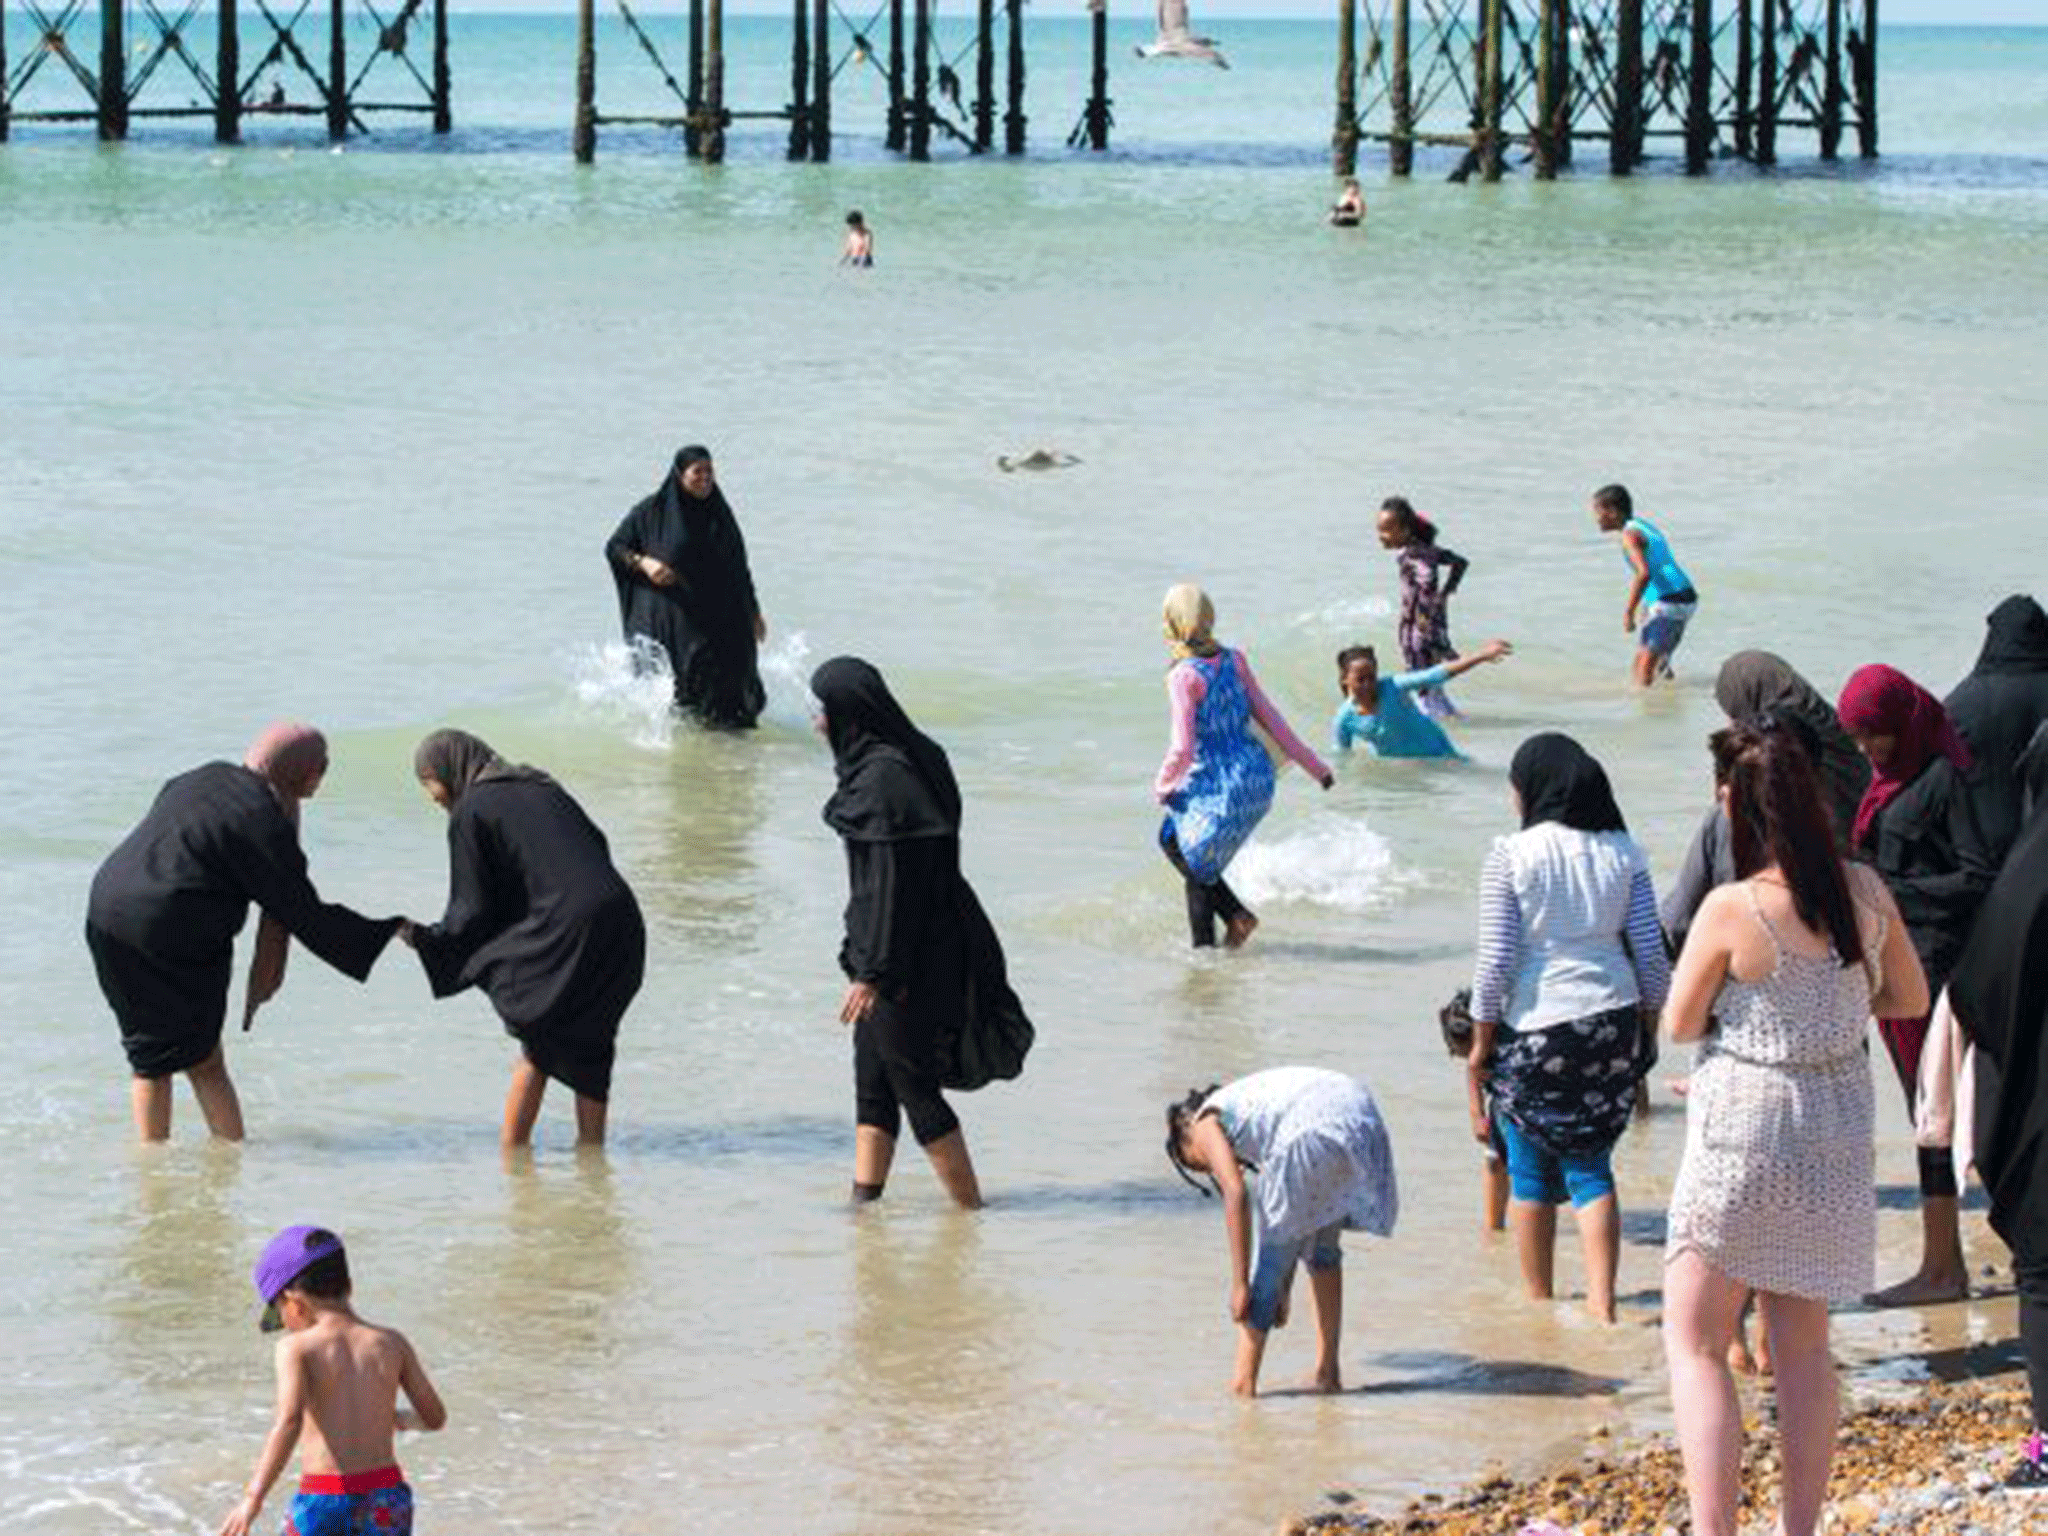 Î‘Ï€Î¿Ï„Î­Î»ÎµÏƒÎ¼Î± ÎµÎ¹ÎºÏŒÎ½Î±Ï‚ Î³Î¹Î± mUSLIMS IN BEACH